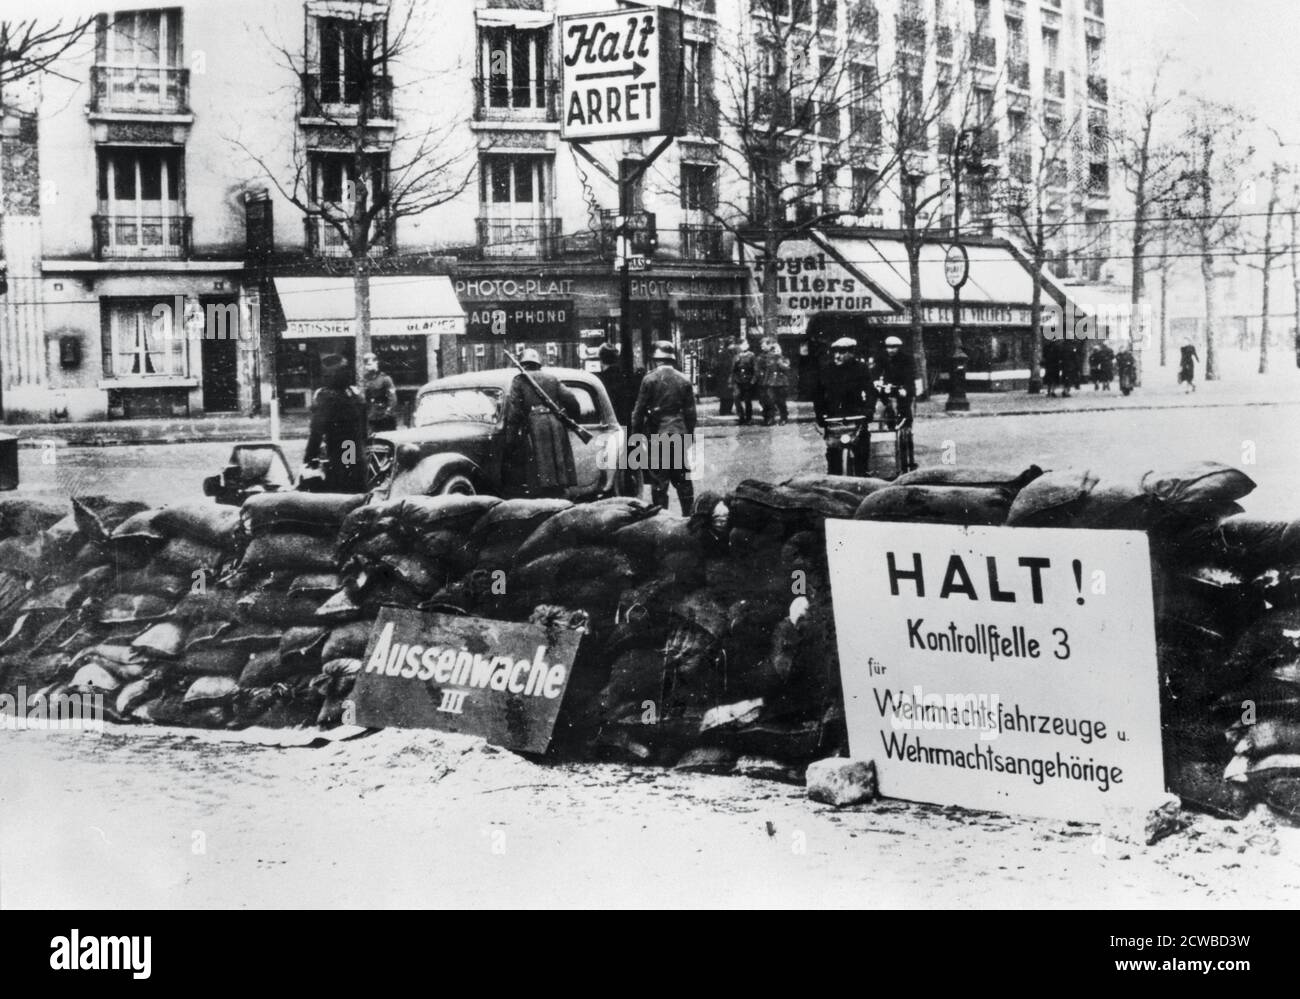 Checkpoint tedesco, occupato Parigi, 1940-1944. Durante l'occupazione, la libertà di circolazione dei cittadini di Parigi è stata limitata perché sono stati sottoposti a controlli dei loro veicoli e documenti. Il fotografo è sconosciuto. Foto Stock